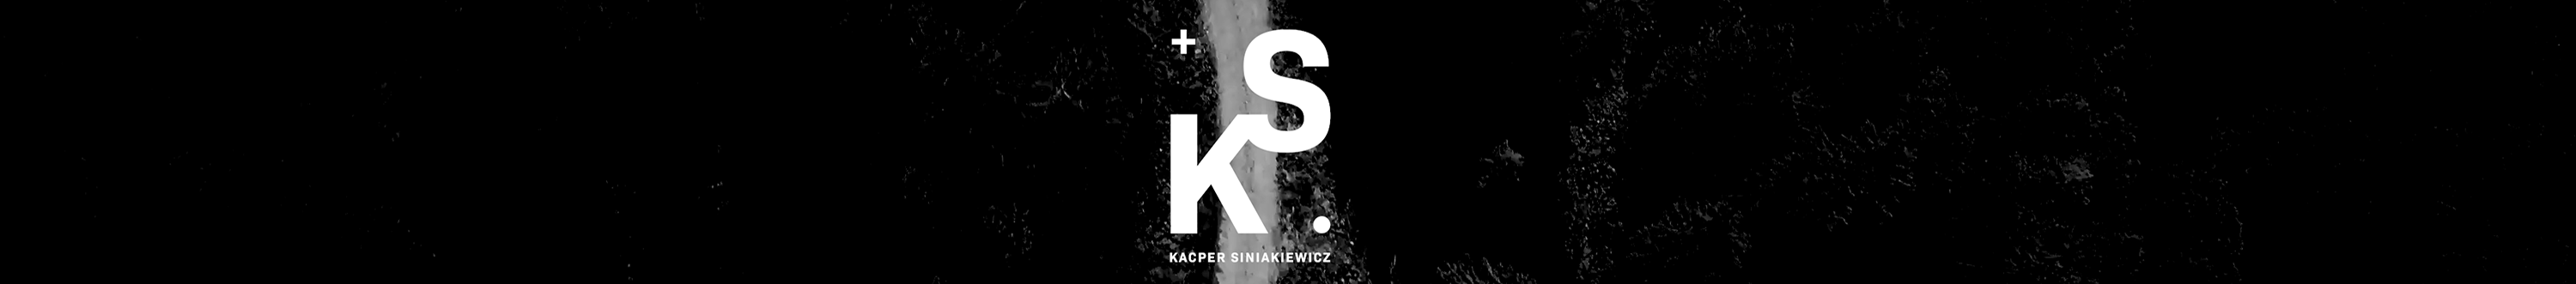 Kacper Siniakiewicz's profile banner